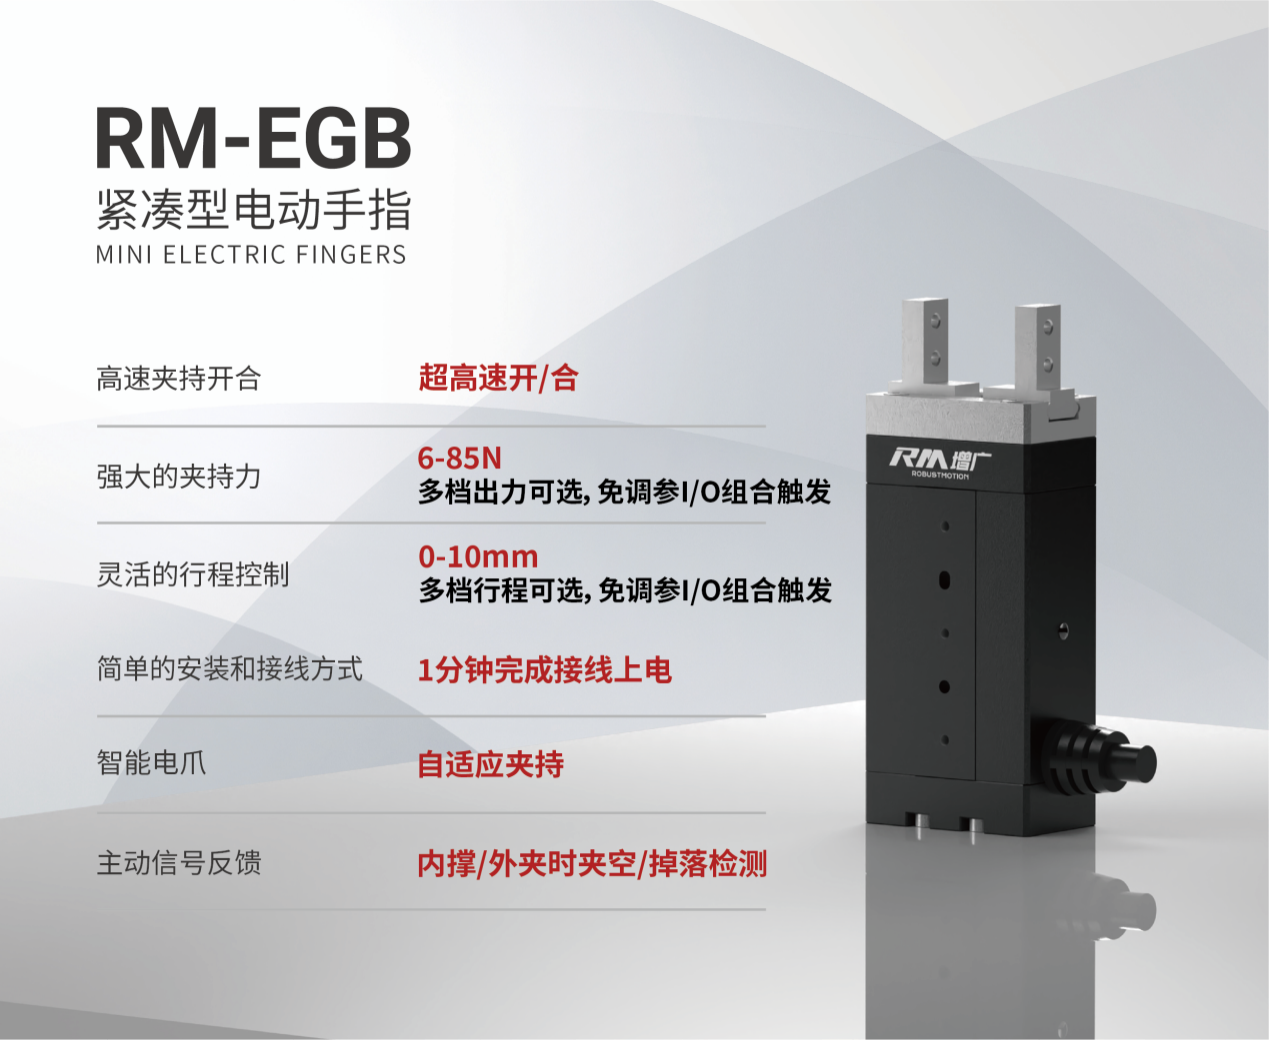 RM-EGB紧凑型电动手指